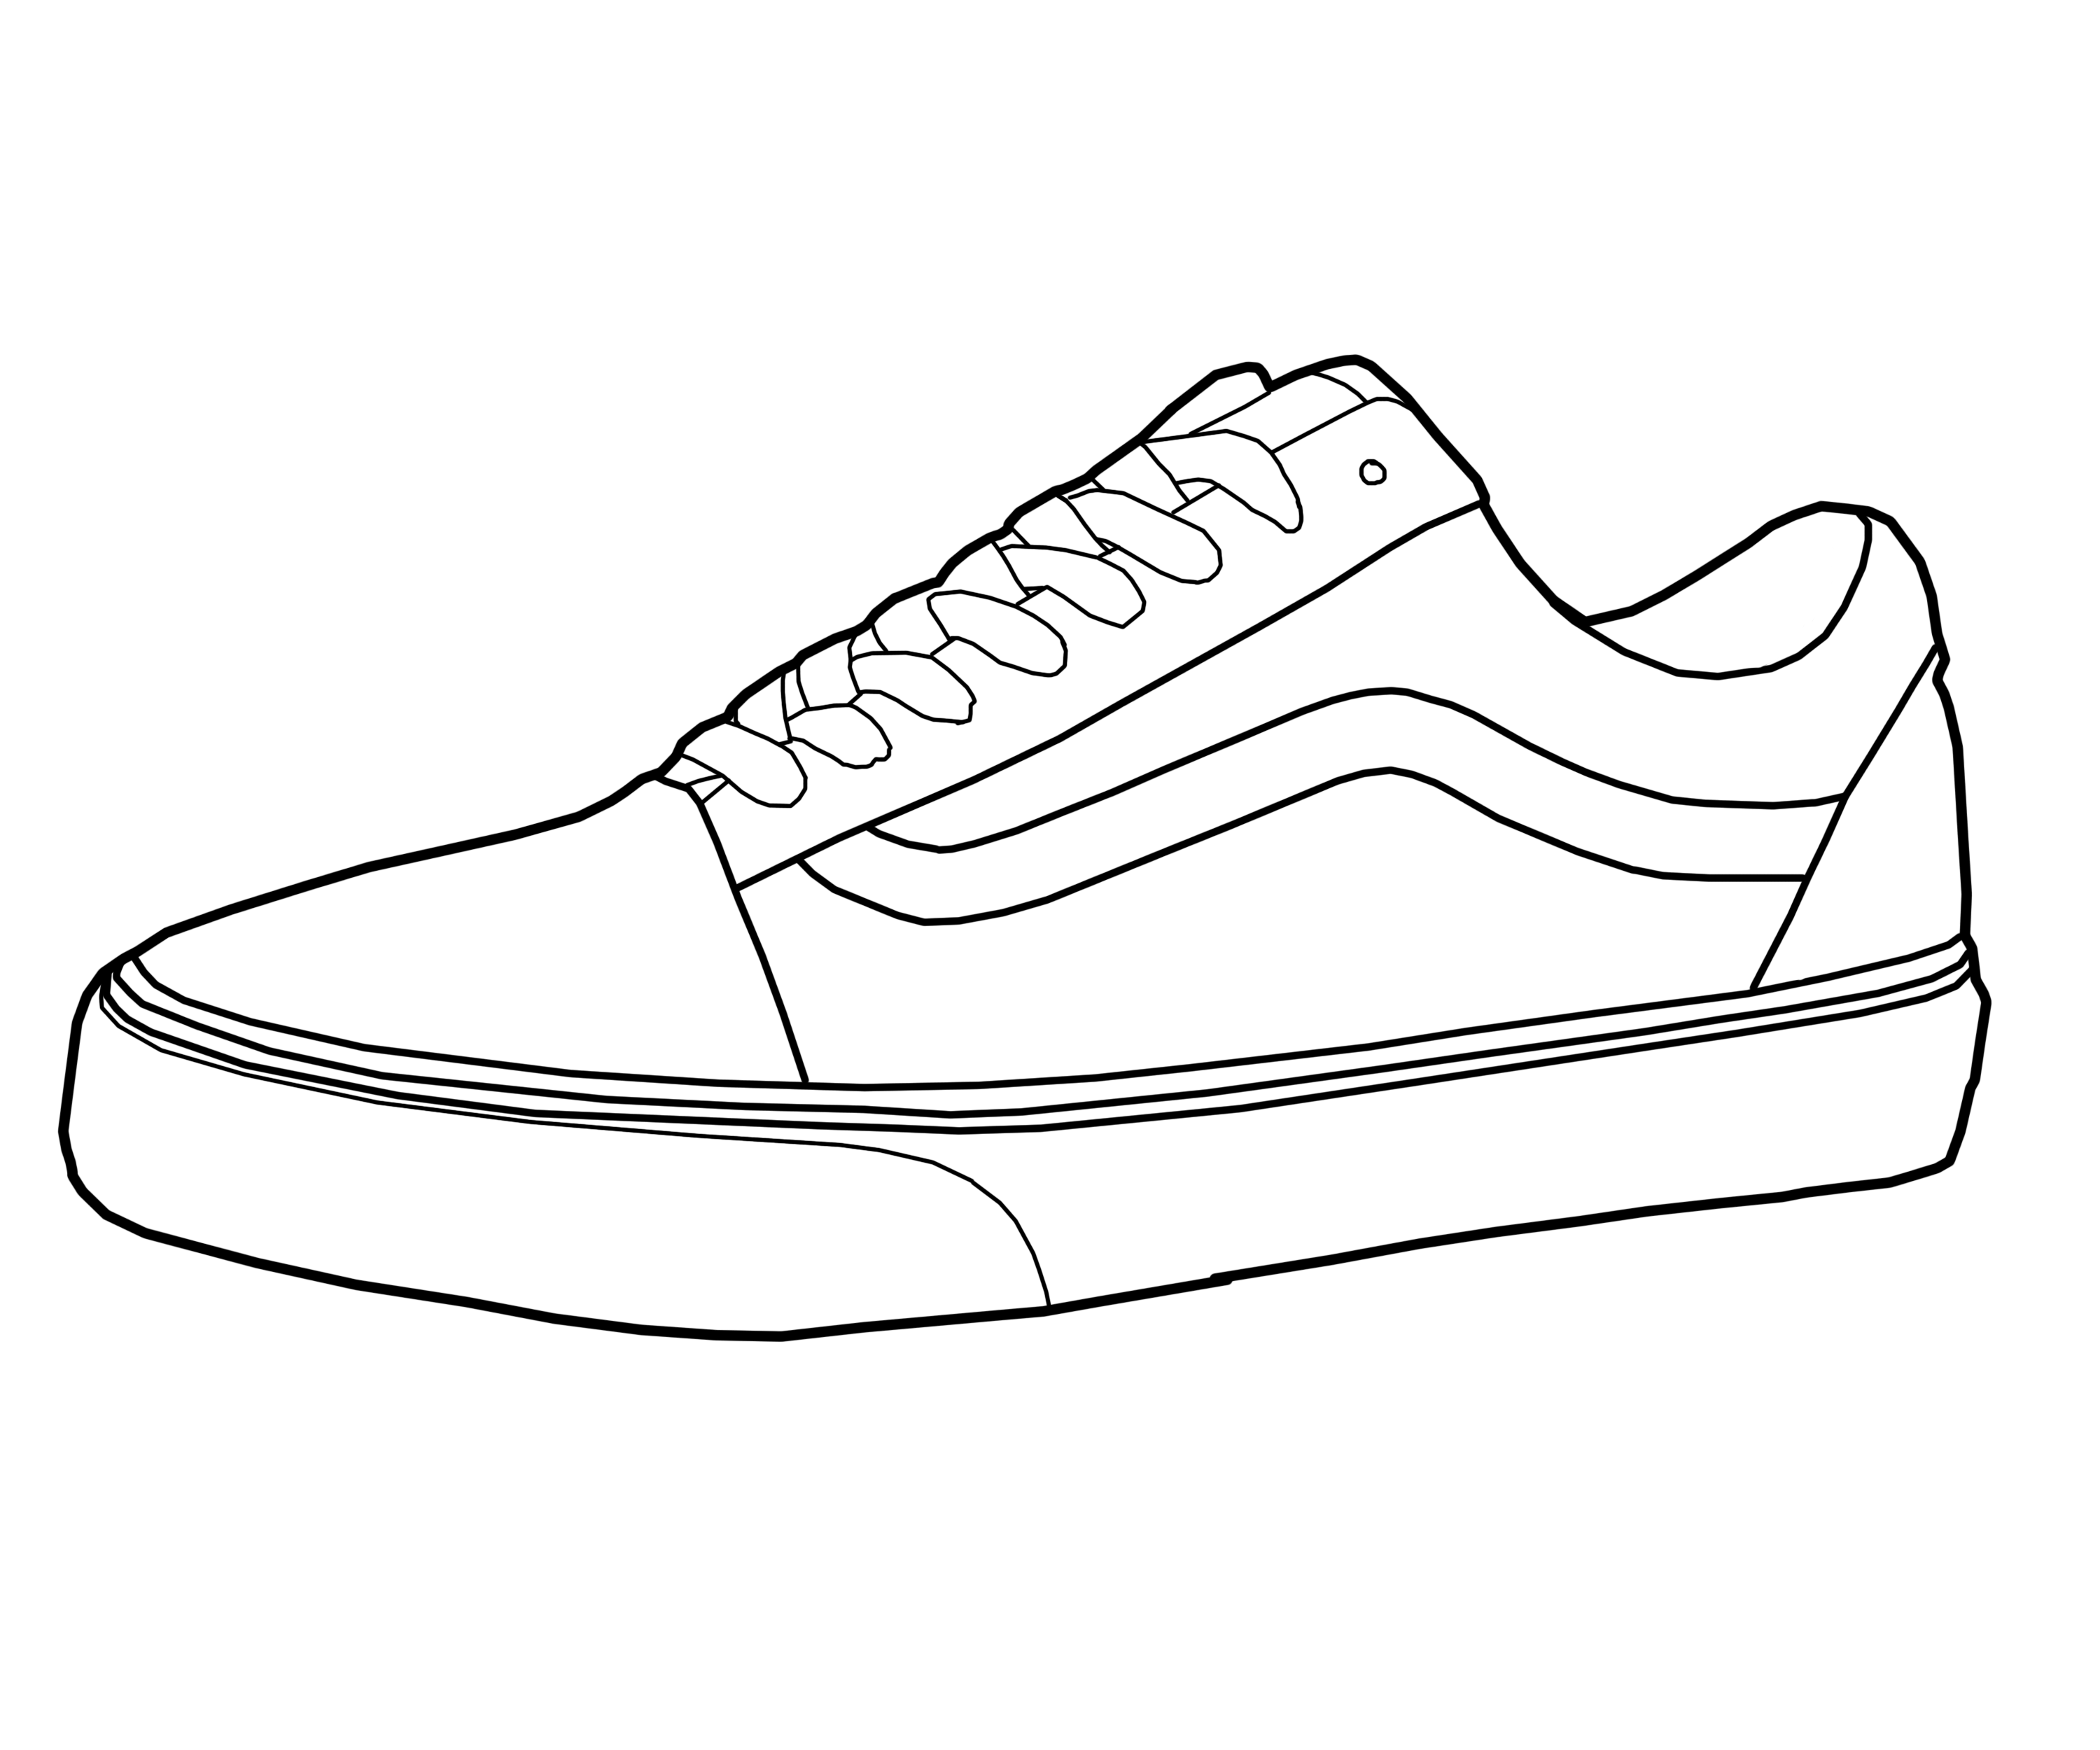 vans sneakers drawing